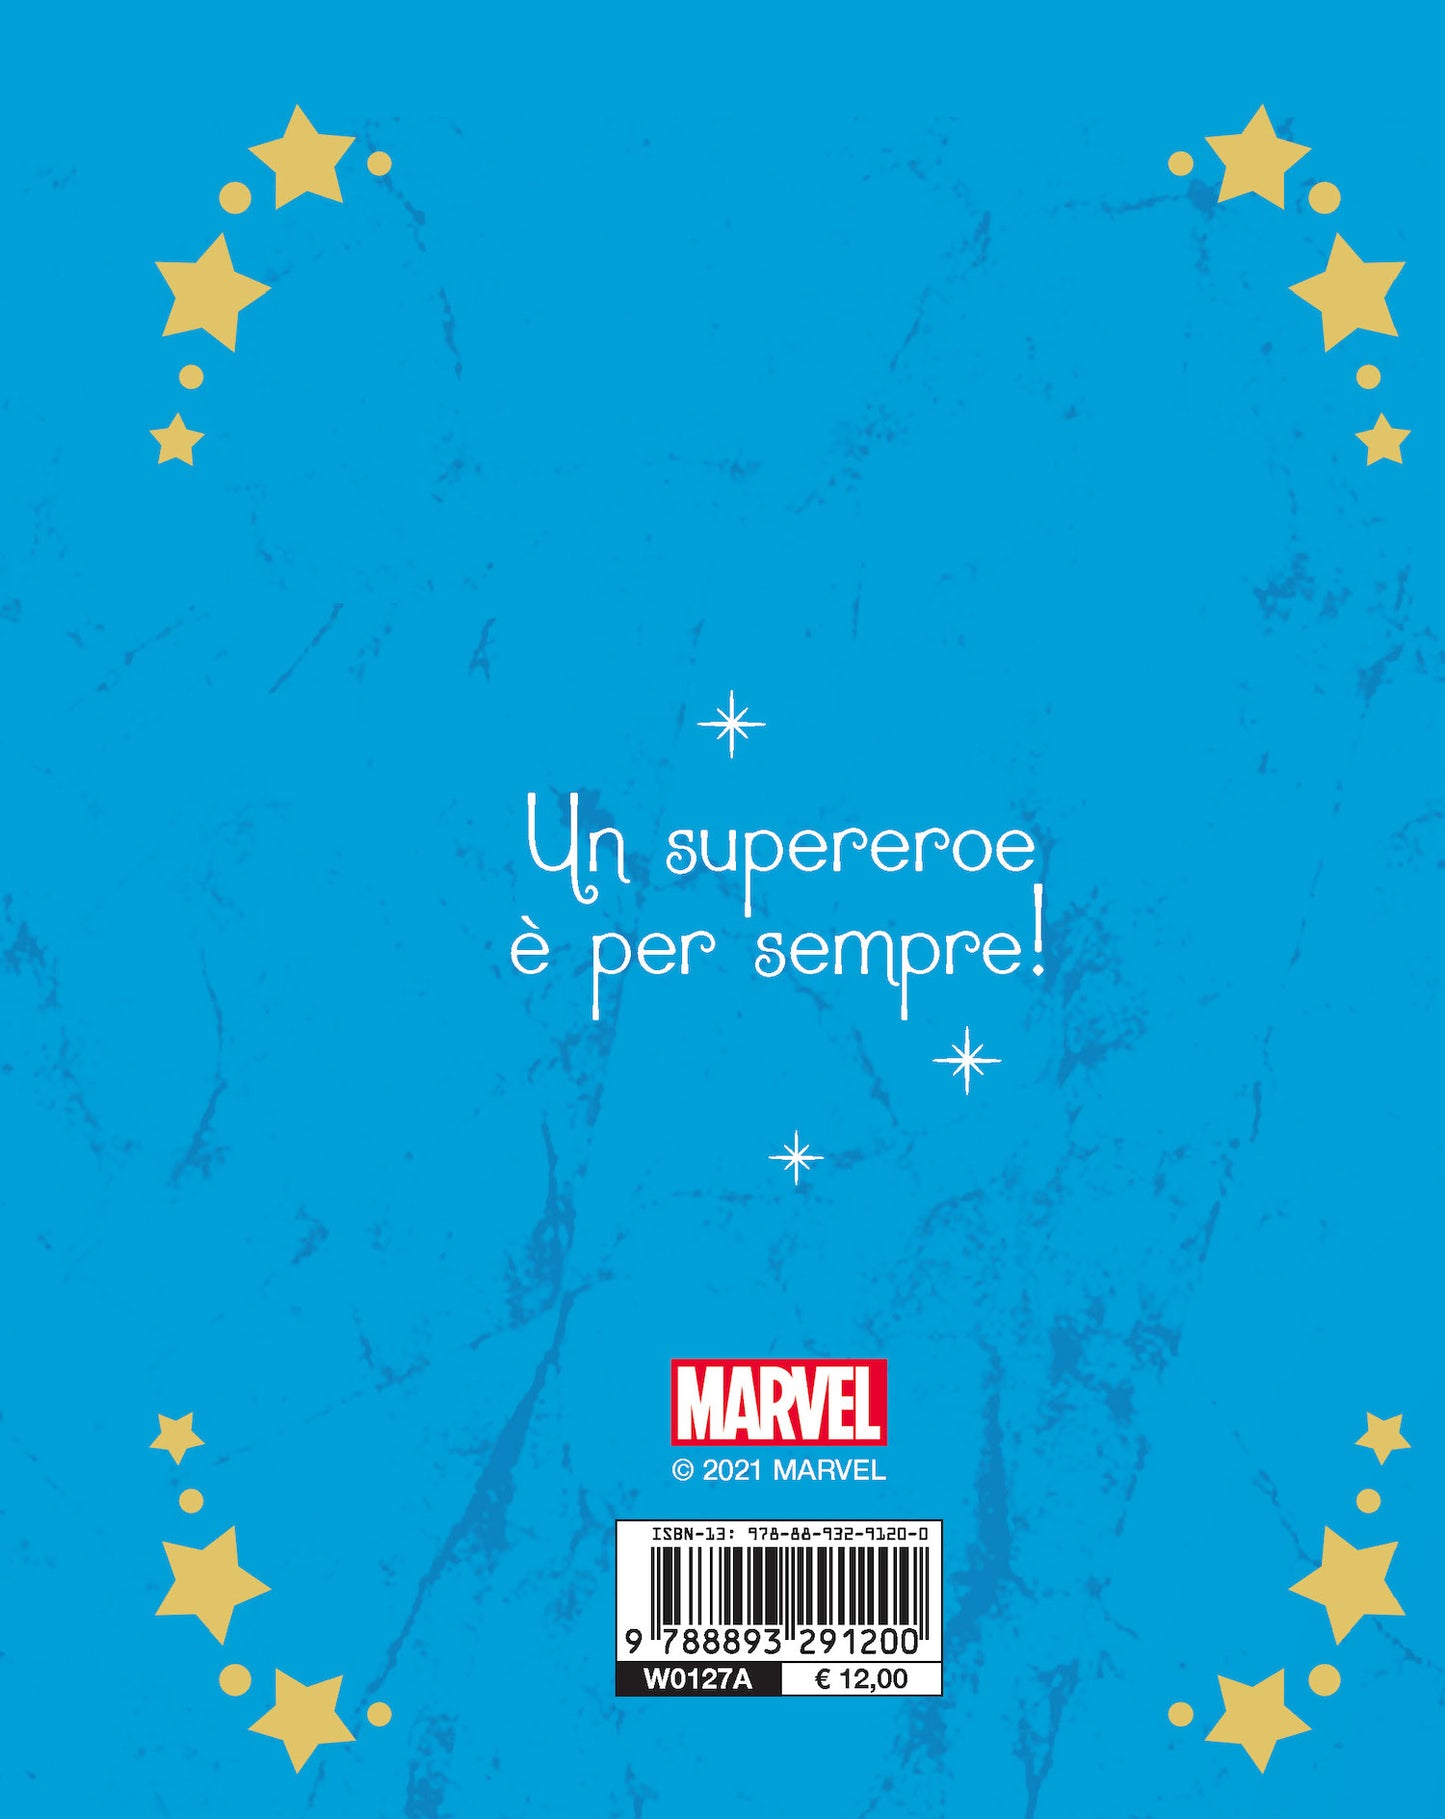 Marvel Racconti di supereroi dai poteri straordinari - Storie da 5 minuti